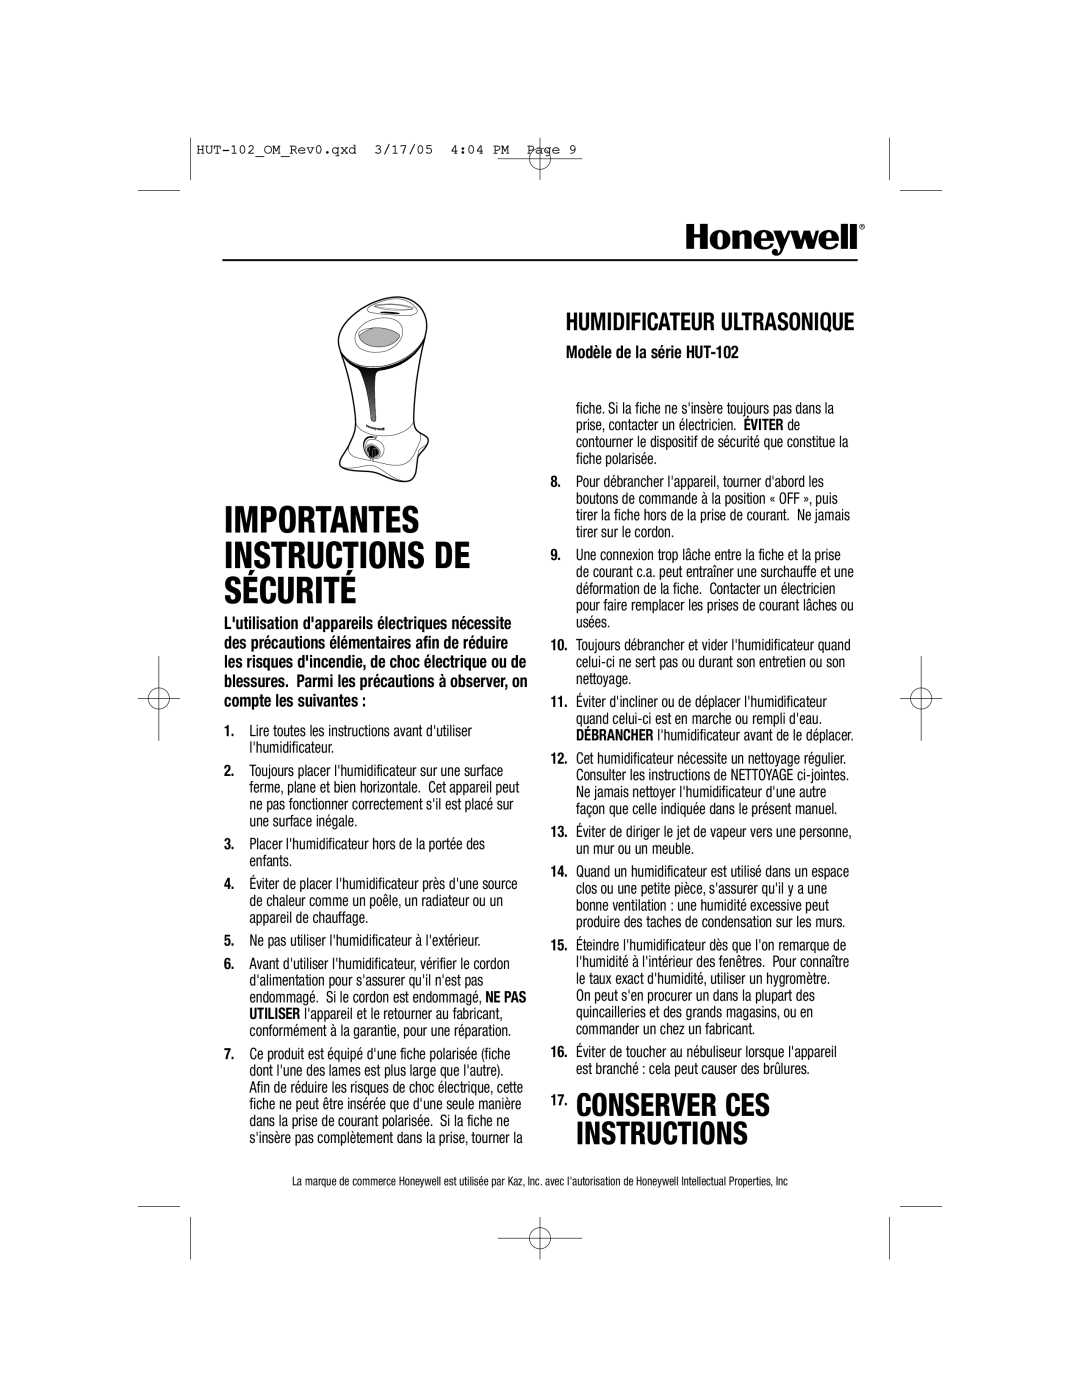 Honeywell Conserver Ces Instructions, Humidificateur Ultrasonique, Modèle de la série HUT-102 